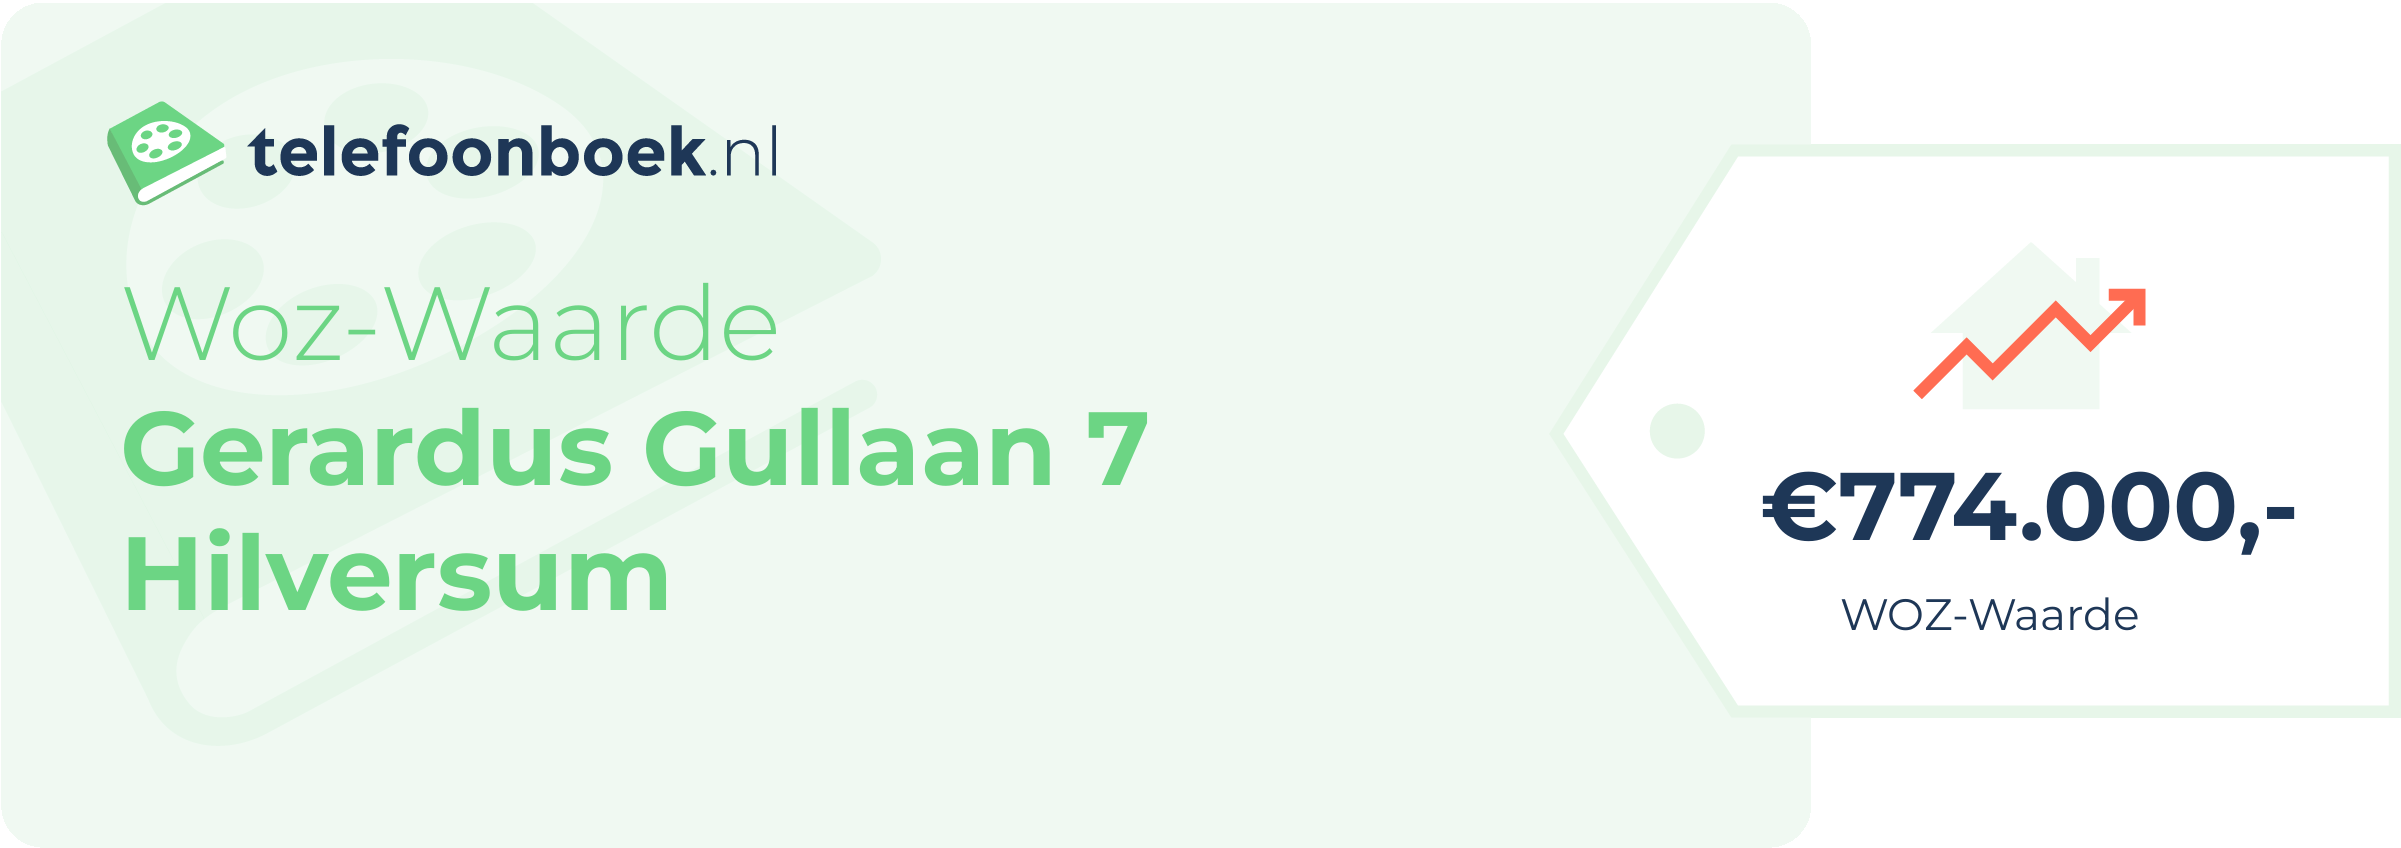 WOZ-waarde Gerardus Gullaan 7 Hilversum